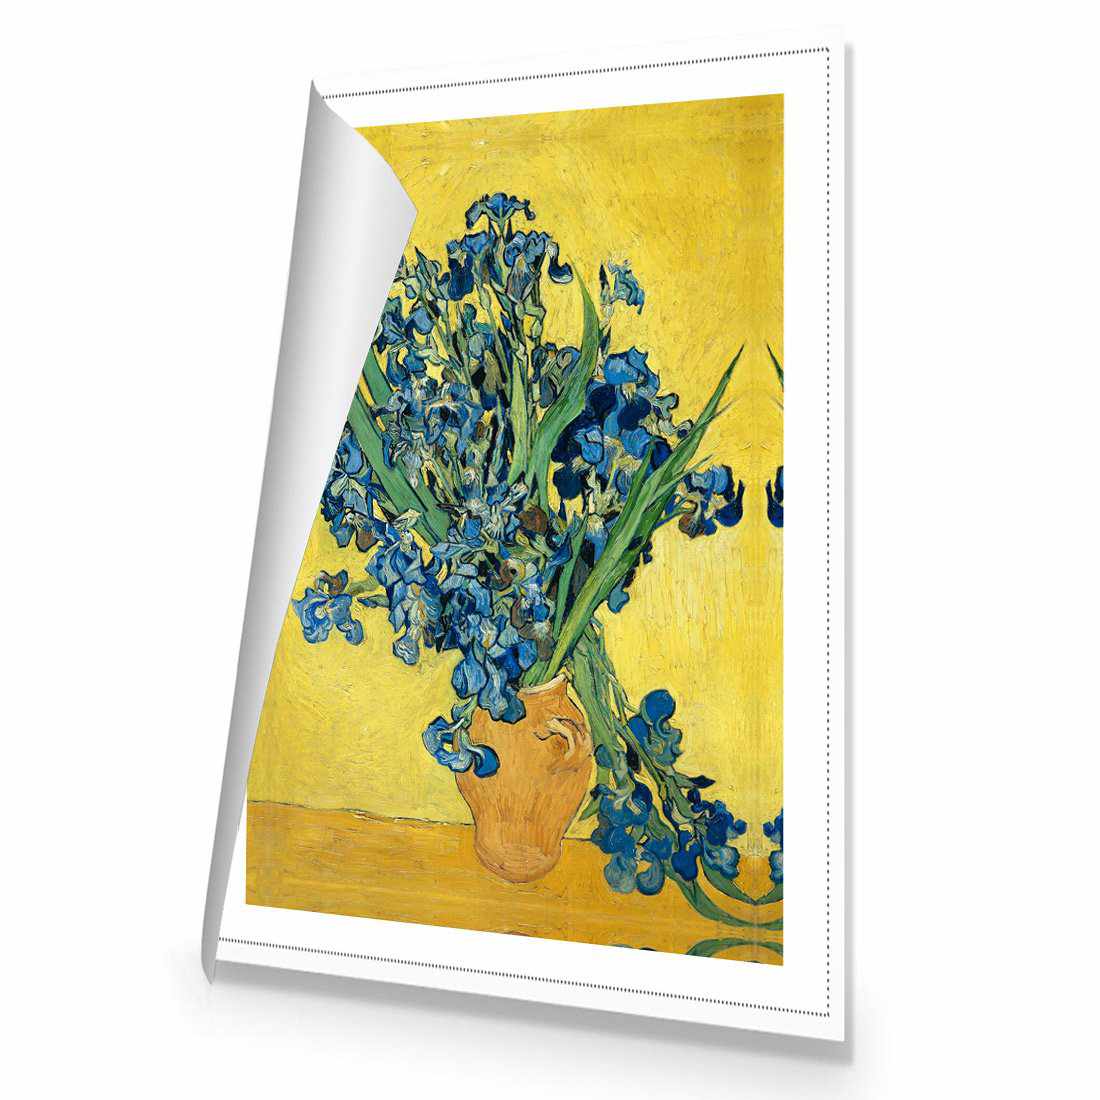 Vase Of Irises - Van Gogh Canvas Art-Canvas-Wall Art Designs-45x30cm-Rolled Canvas-Wall Art Designs